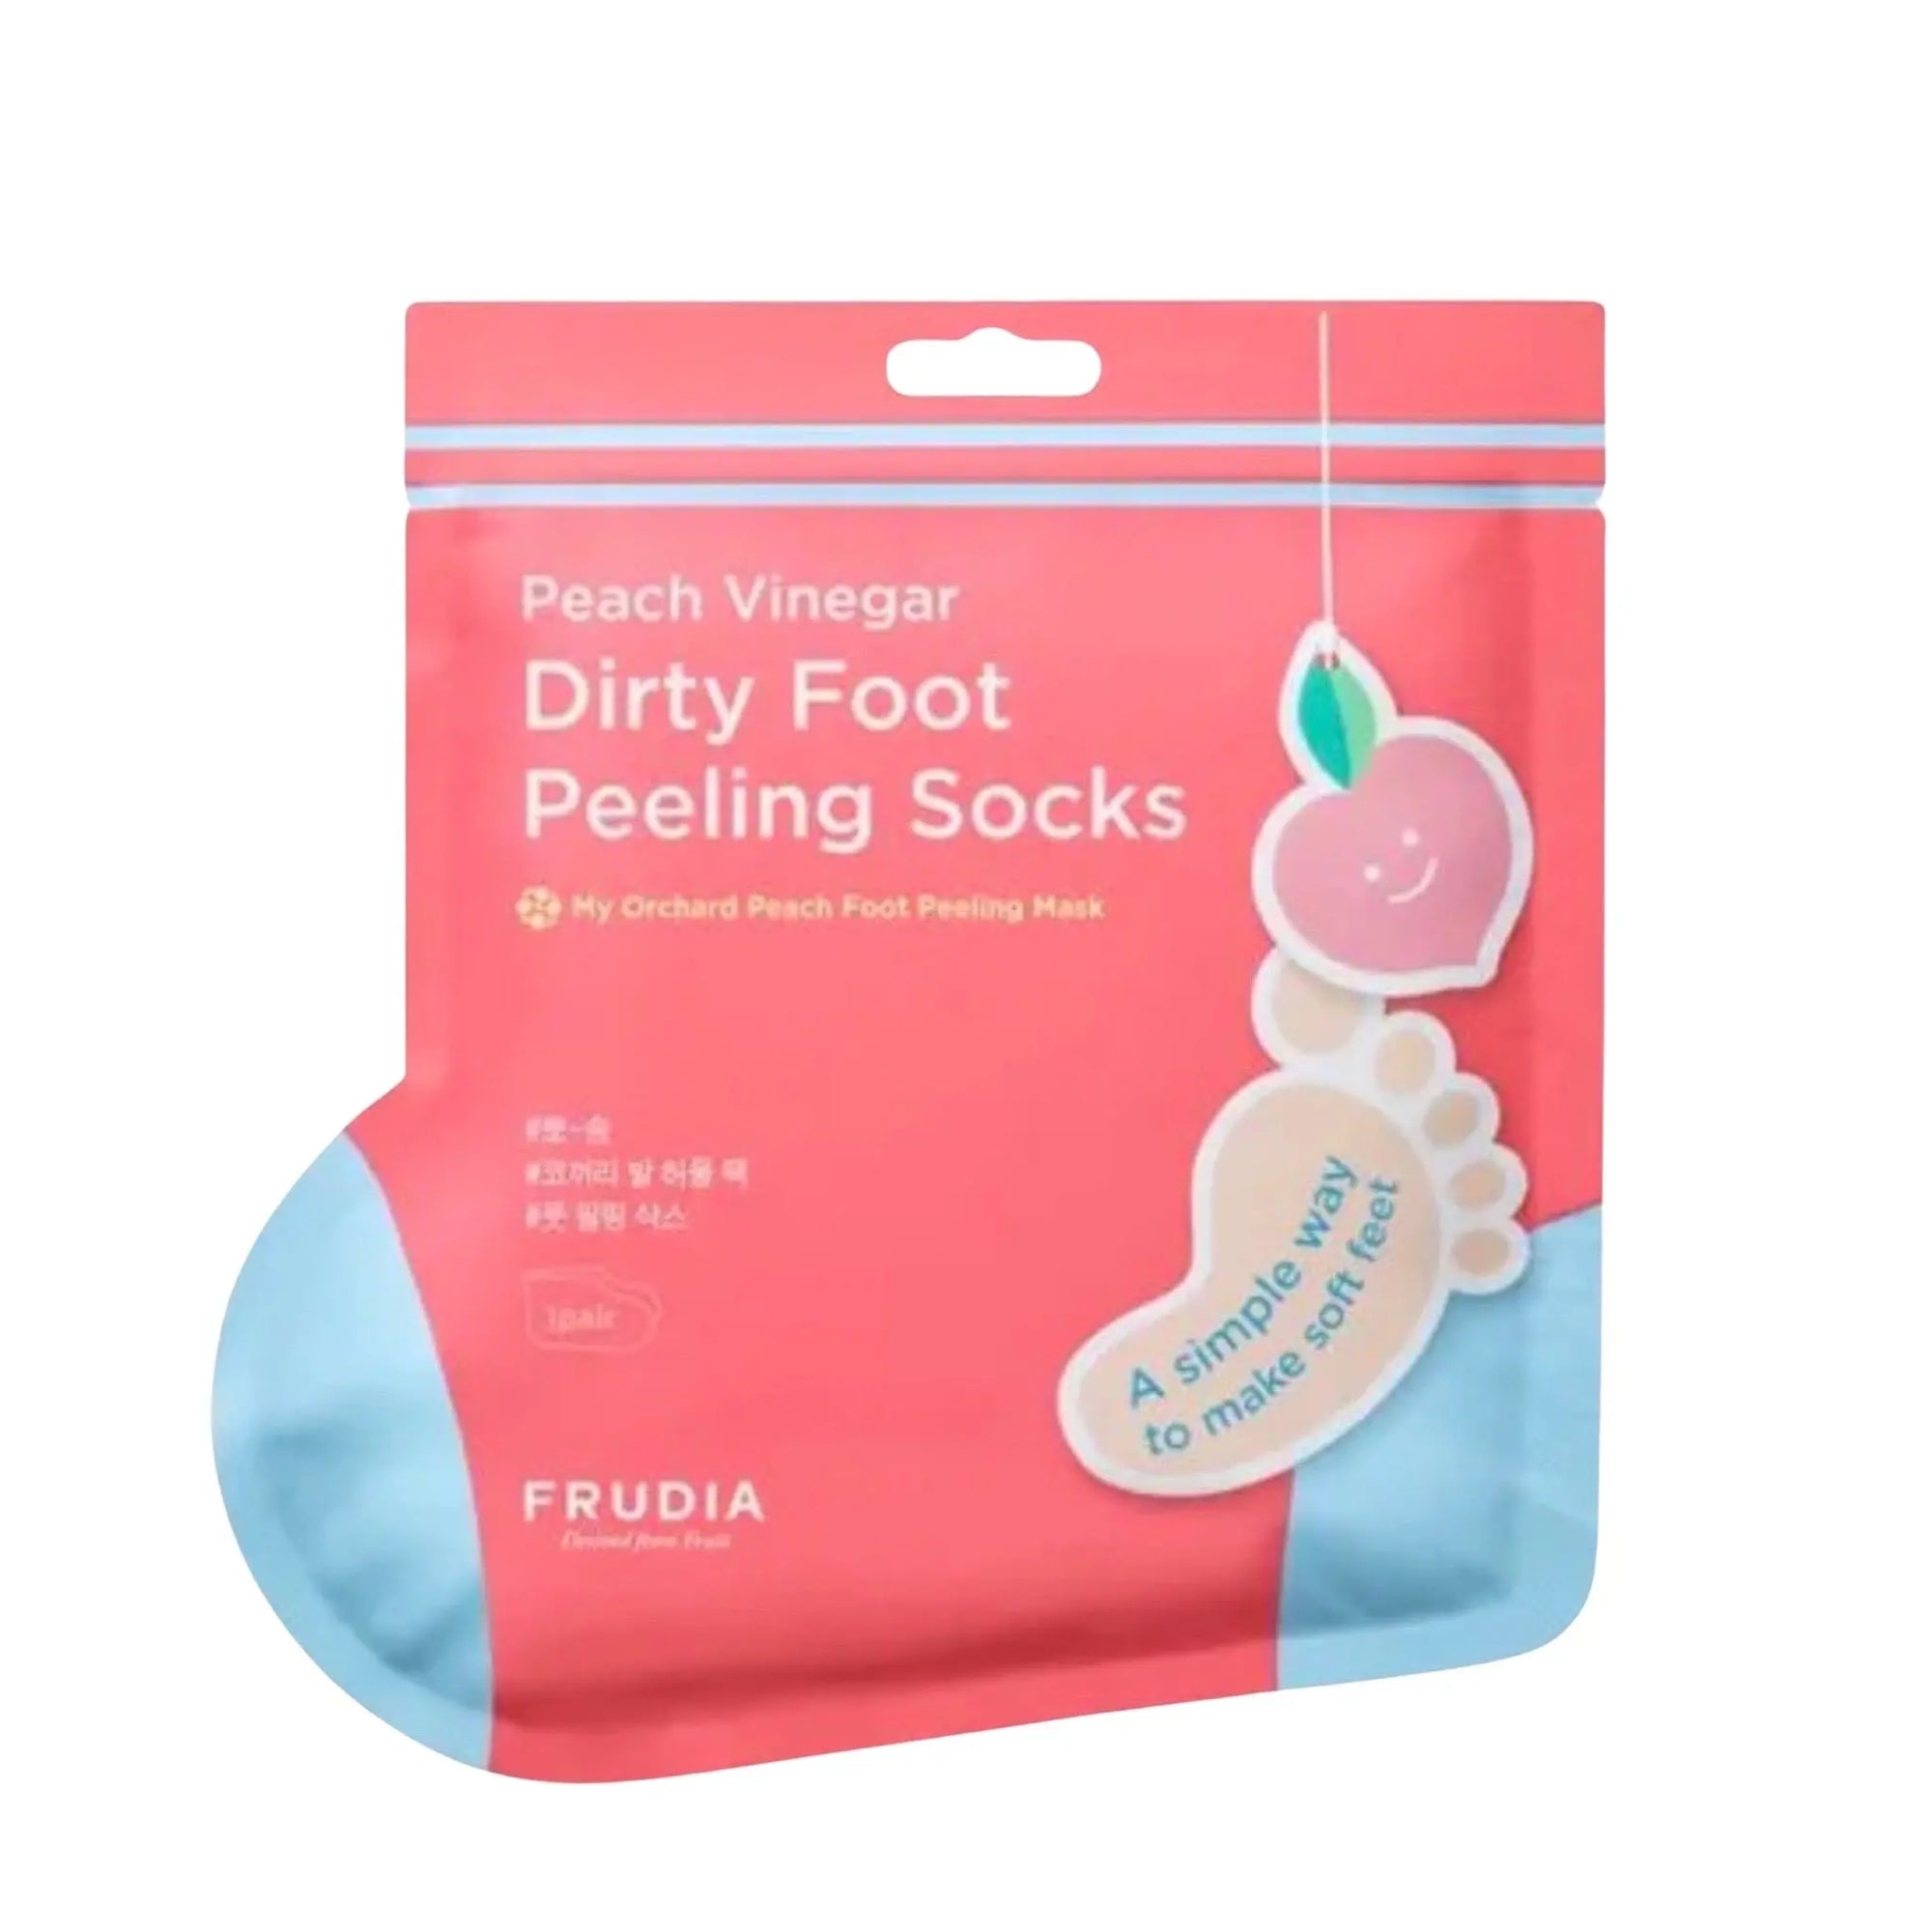 Frudia - My Orchard Peach Foot Peeling Mask 1 Pair Frudia